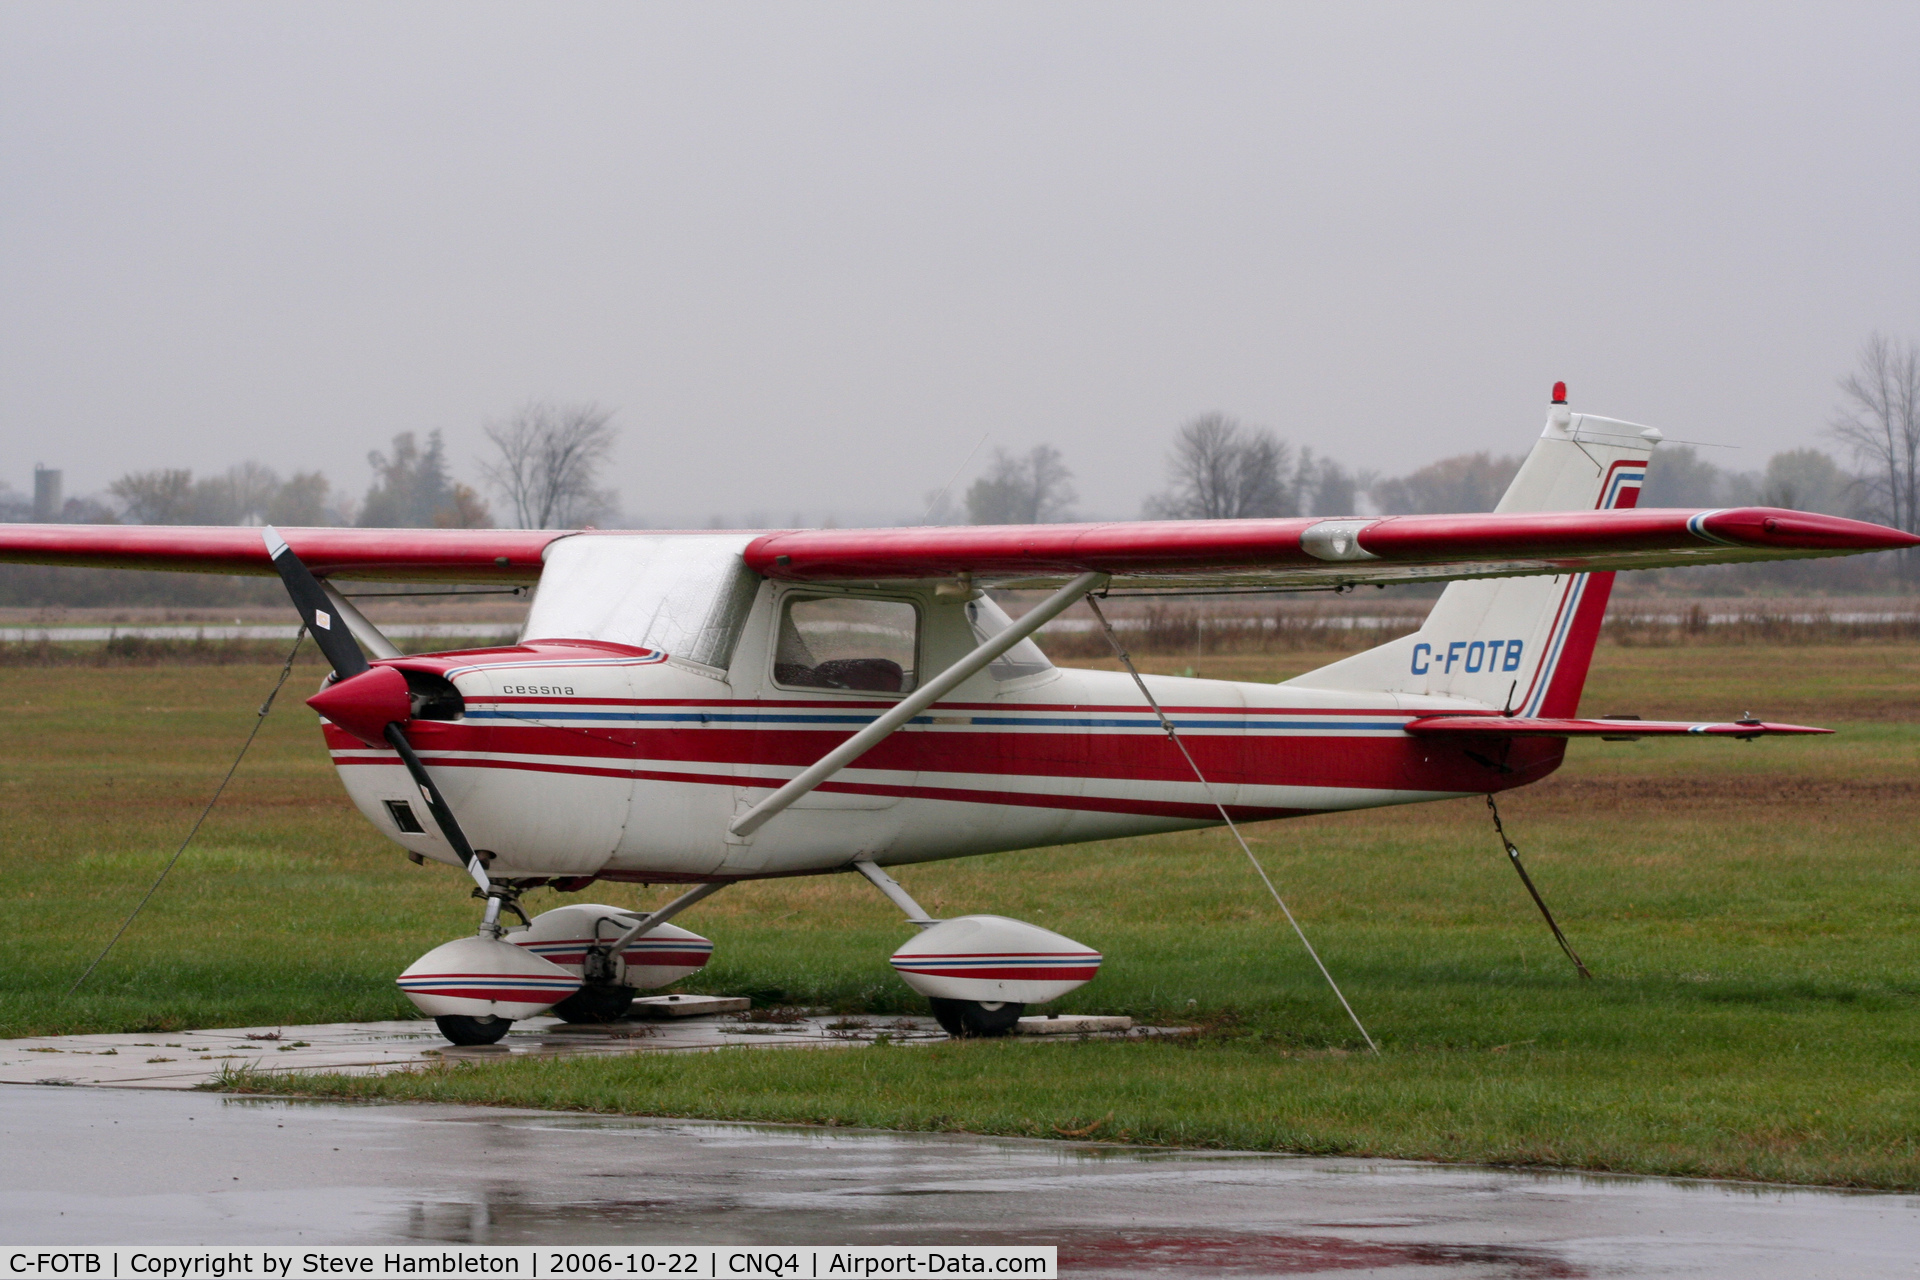 C-FOTB, 1966 Cessna 150F C/N 15062984, At Tillsonburg, Ontario